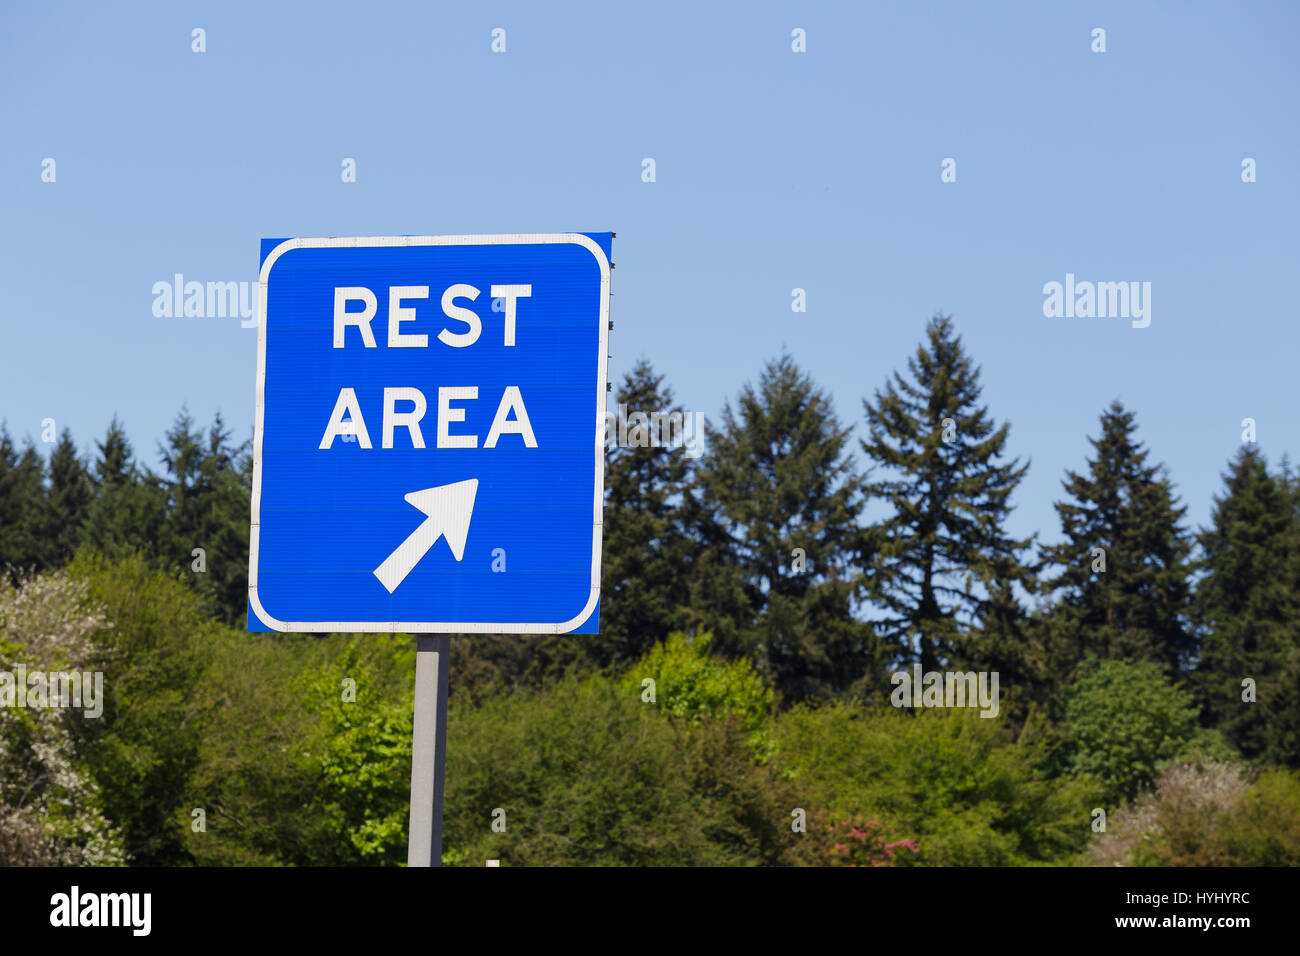 Aire de repos Bleu signe pointe vers une sortie de l'autoroute où les conducteurs peuvent se détendre et se reposer pendant leur voyage. Banque D'Images